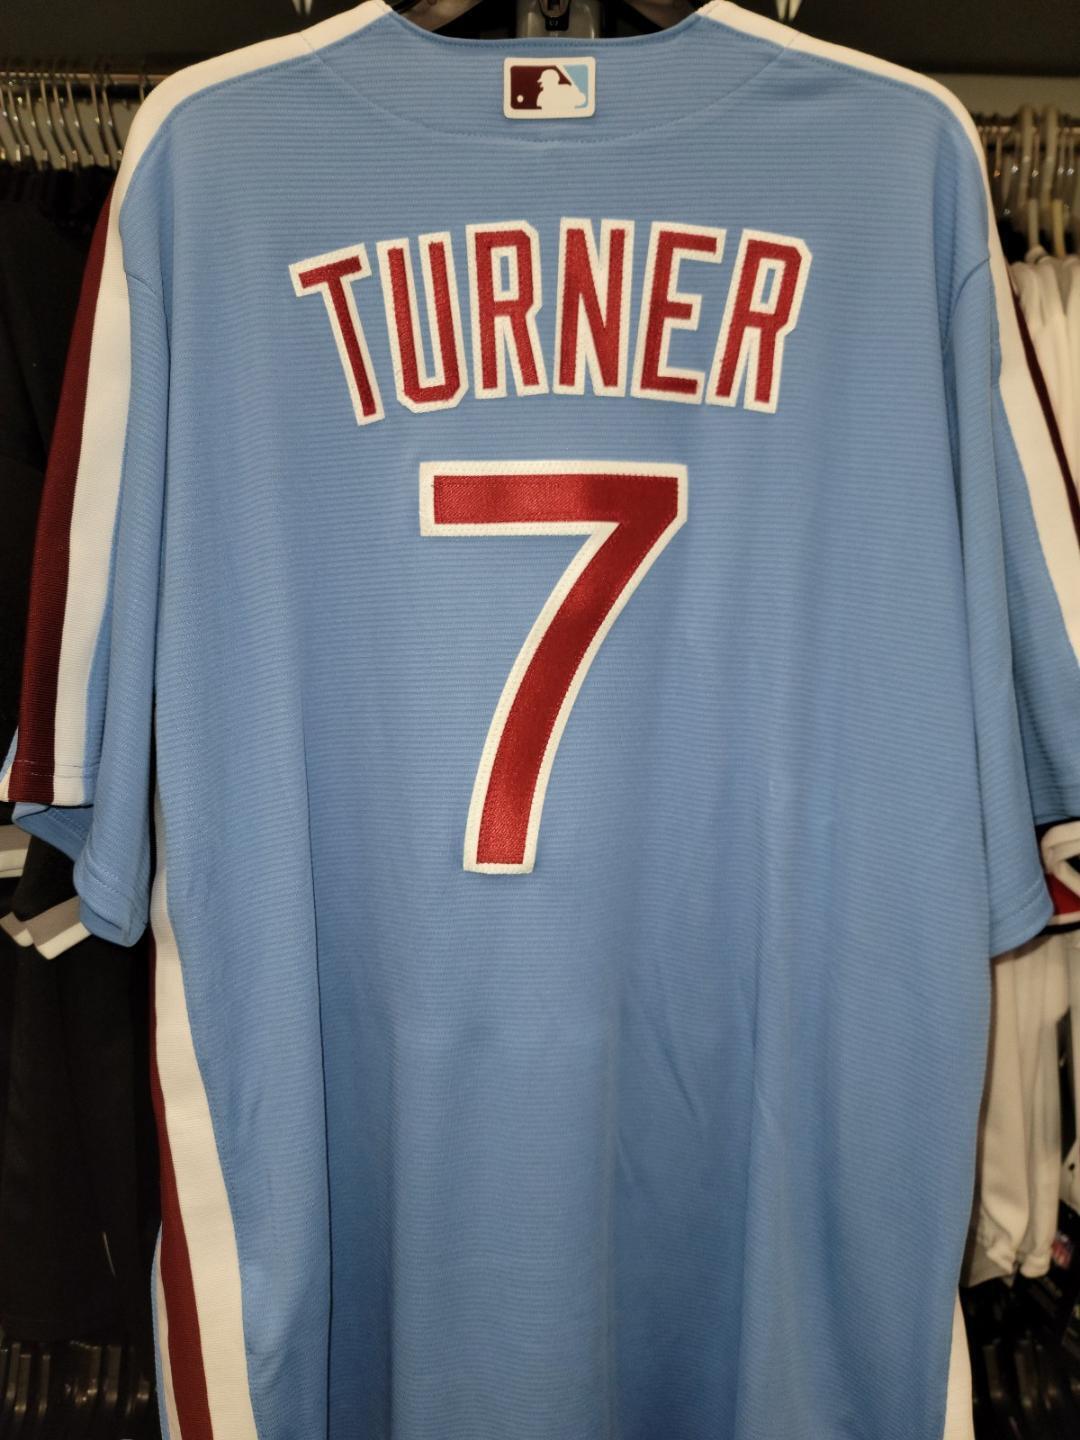 Official Trea Turner Philadelphia Phillies Jerseys, Phillies Trea Turner  Baseball Jerseys, Uniforms